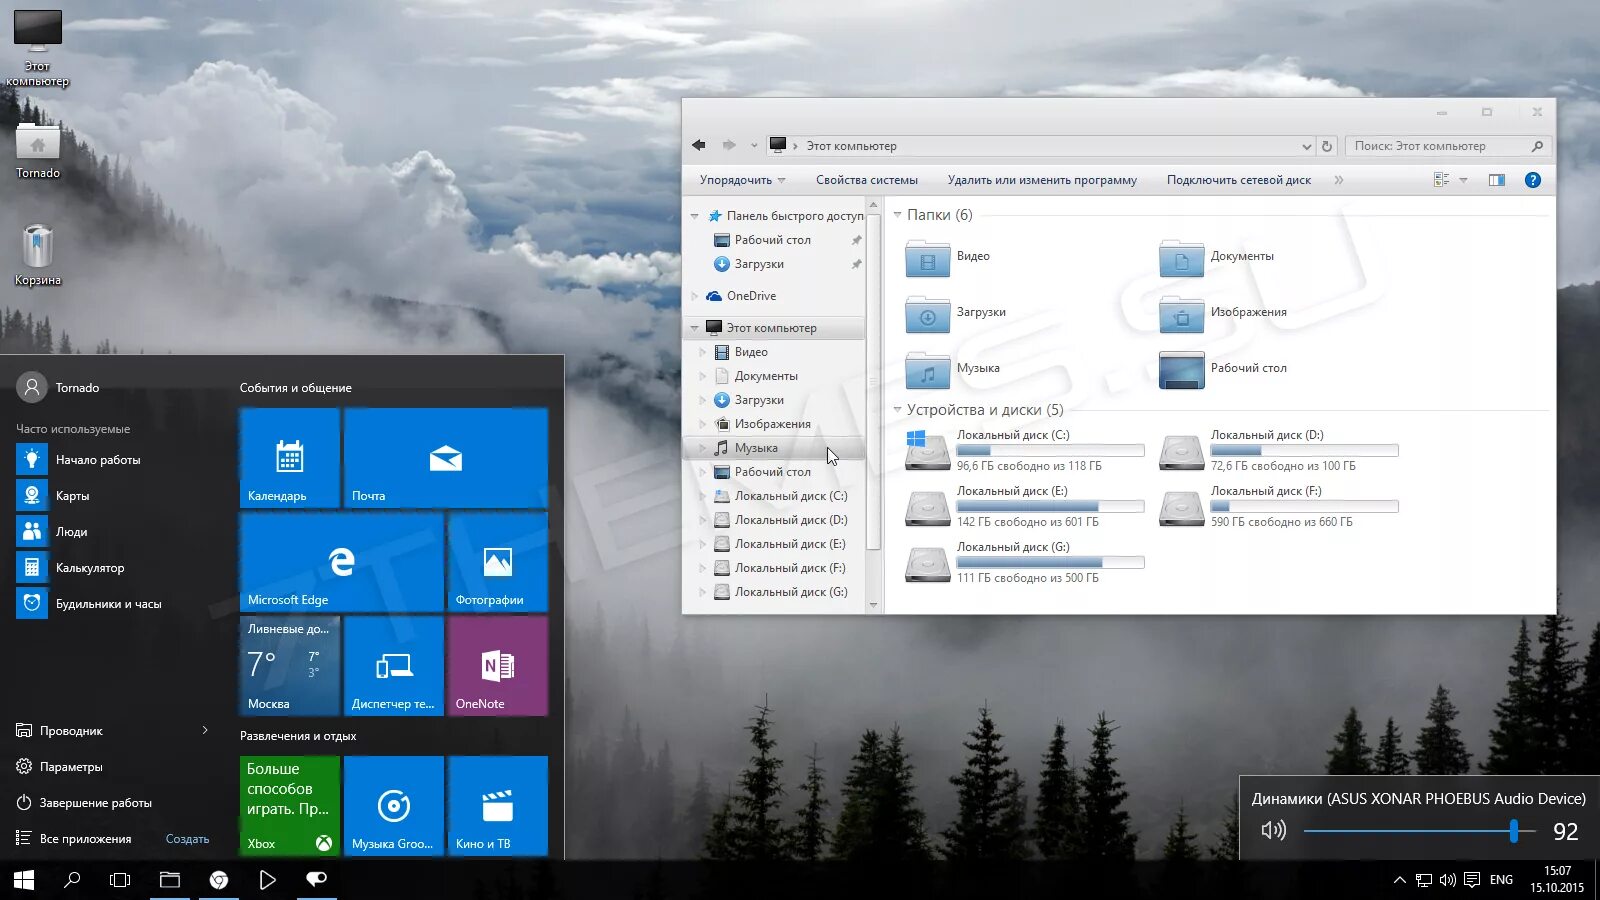 Only windows 10. Win 10 Интерфейс. Темы для Windows 10. Тема виндовс. Визуальное оформление Windows 10.